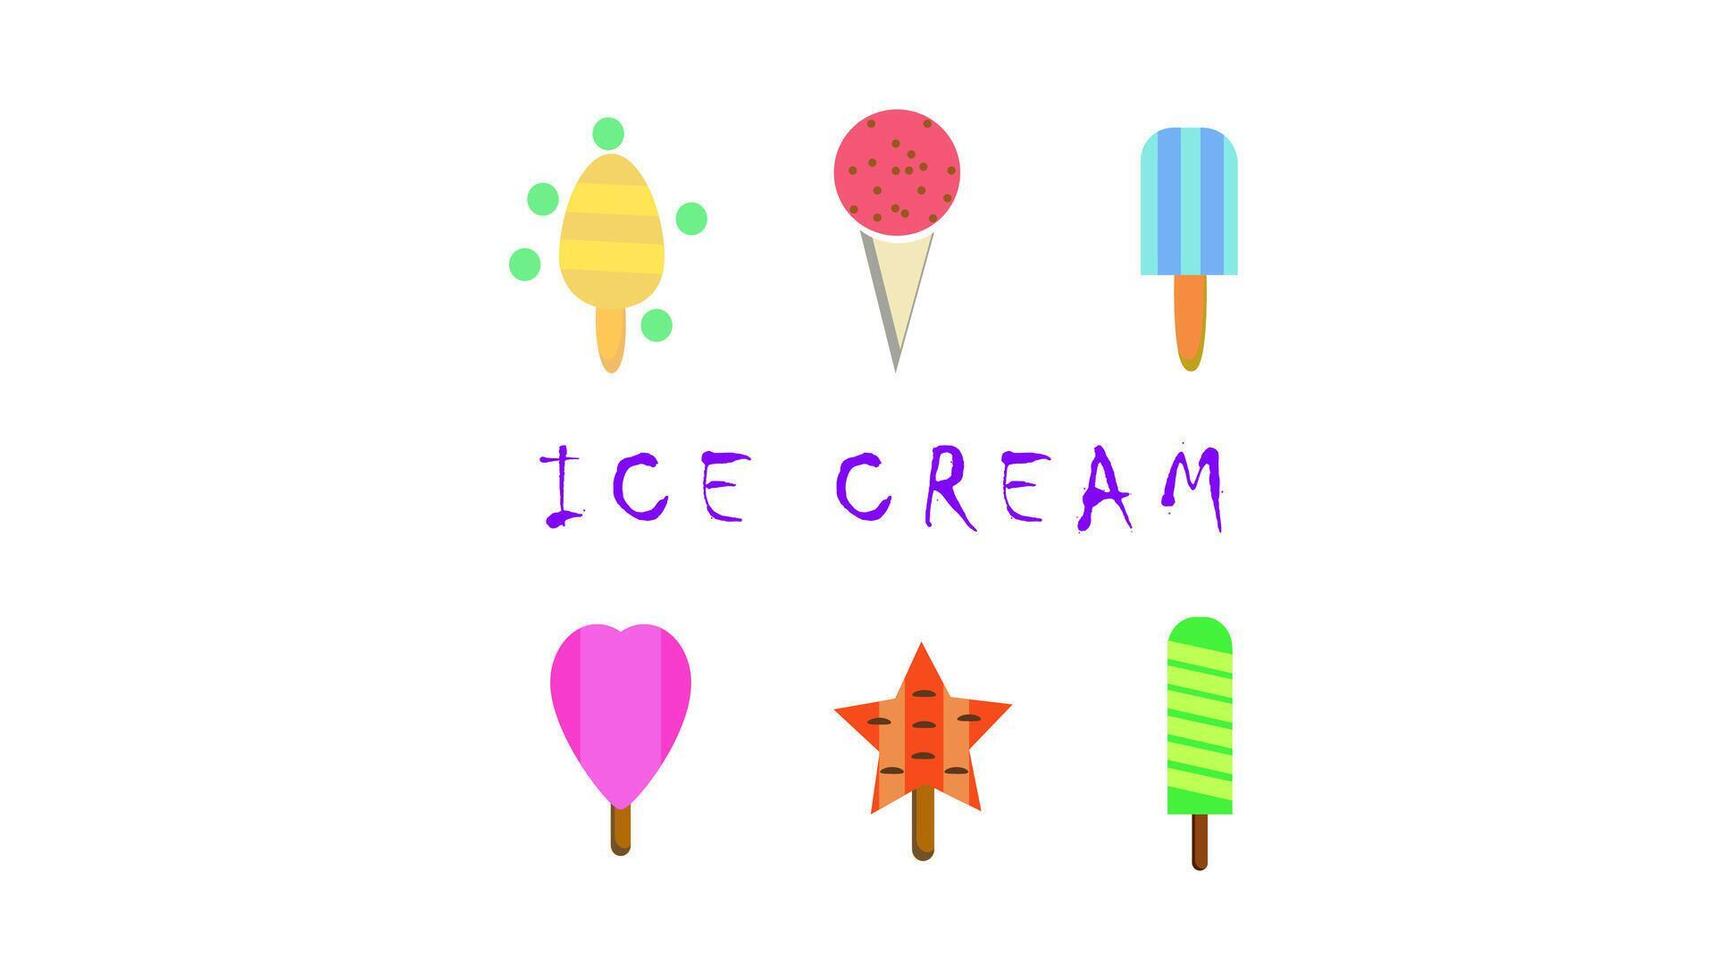 hielo crema emblema,hielo crema logo, sencillo y minimalista vector